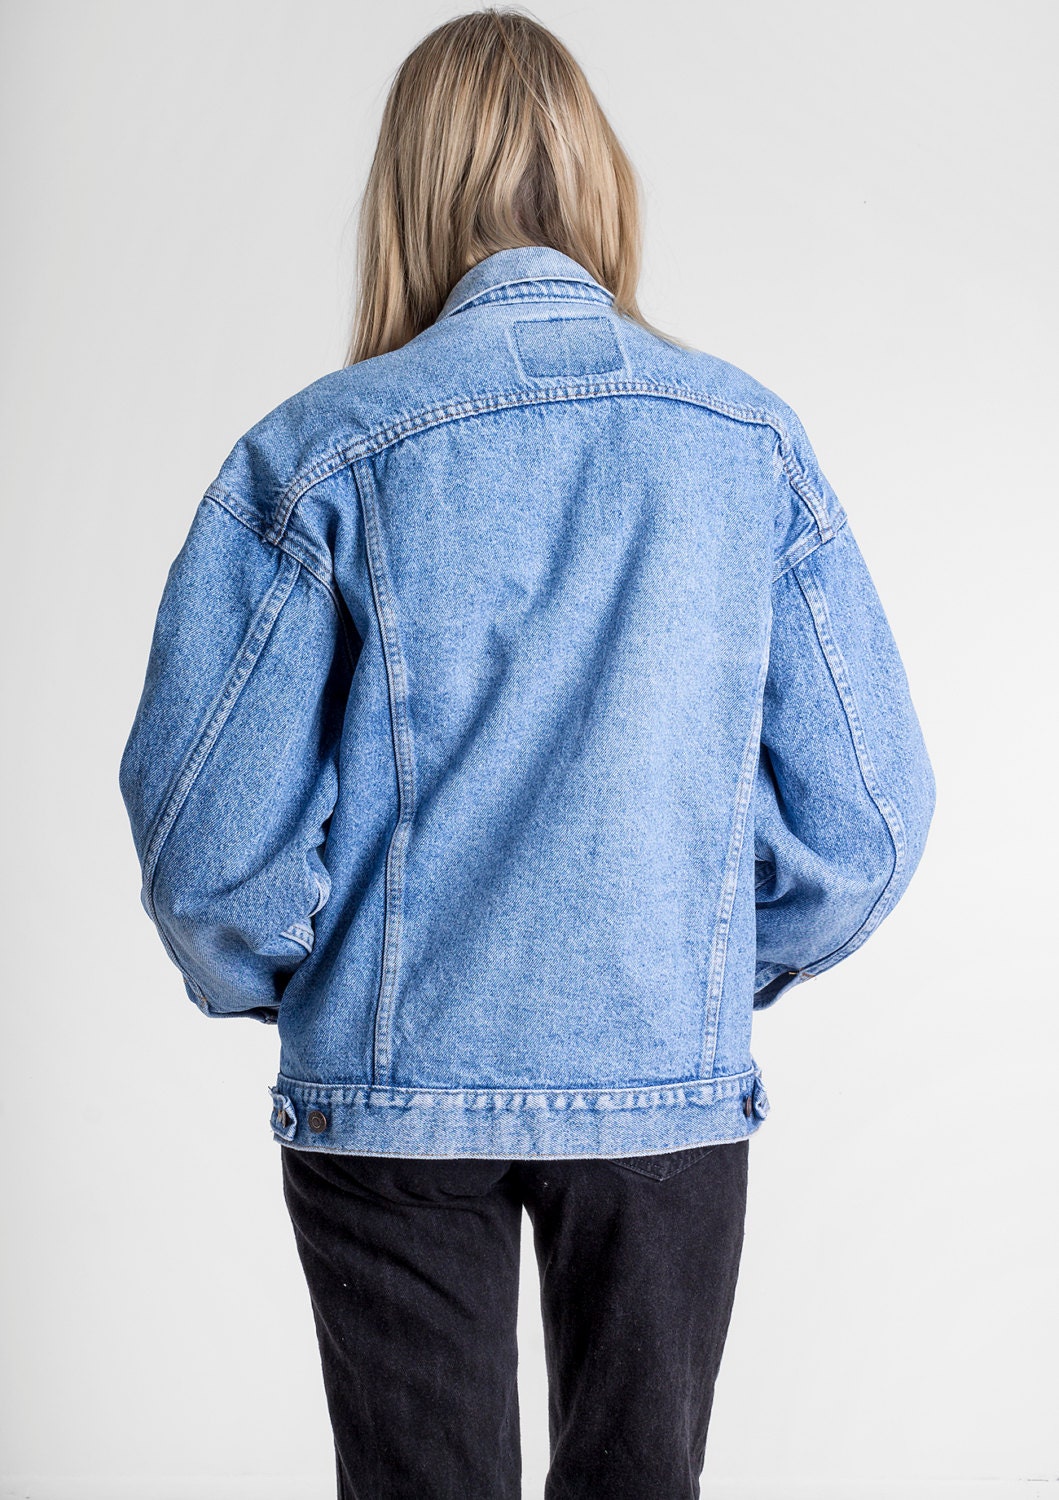 LEVI'S JEAN jacket vintage denim blue by BetterStayTogether